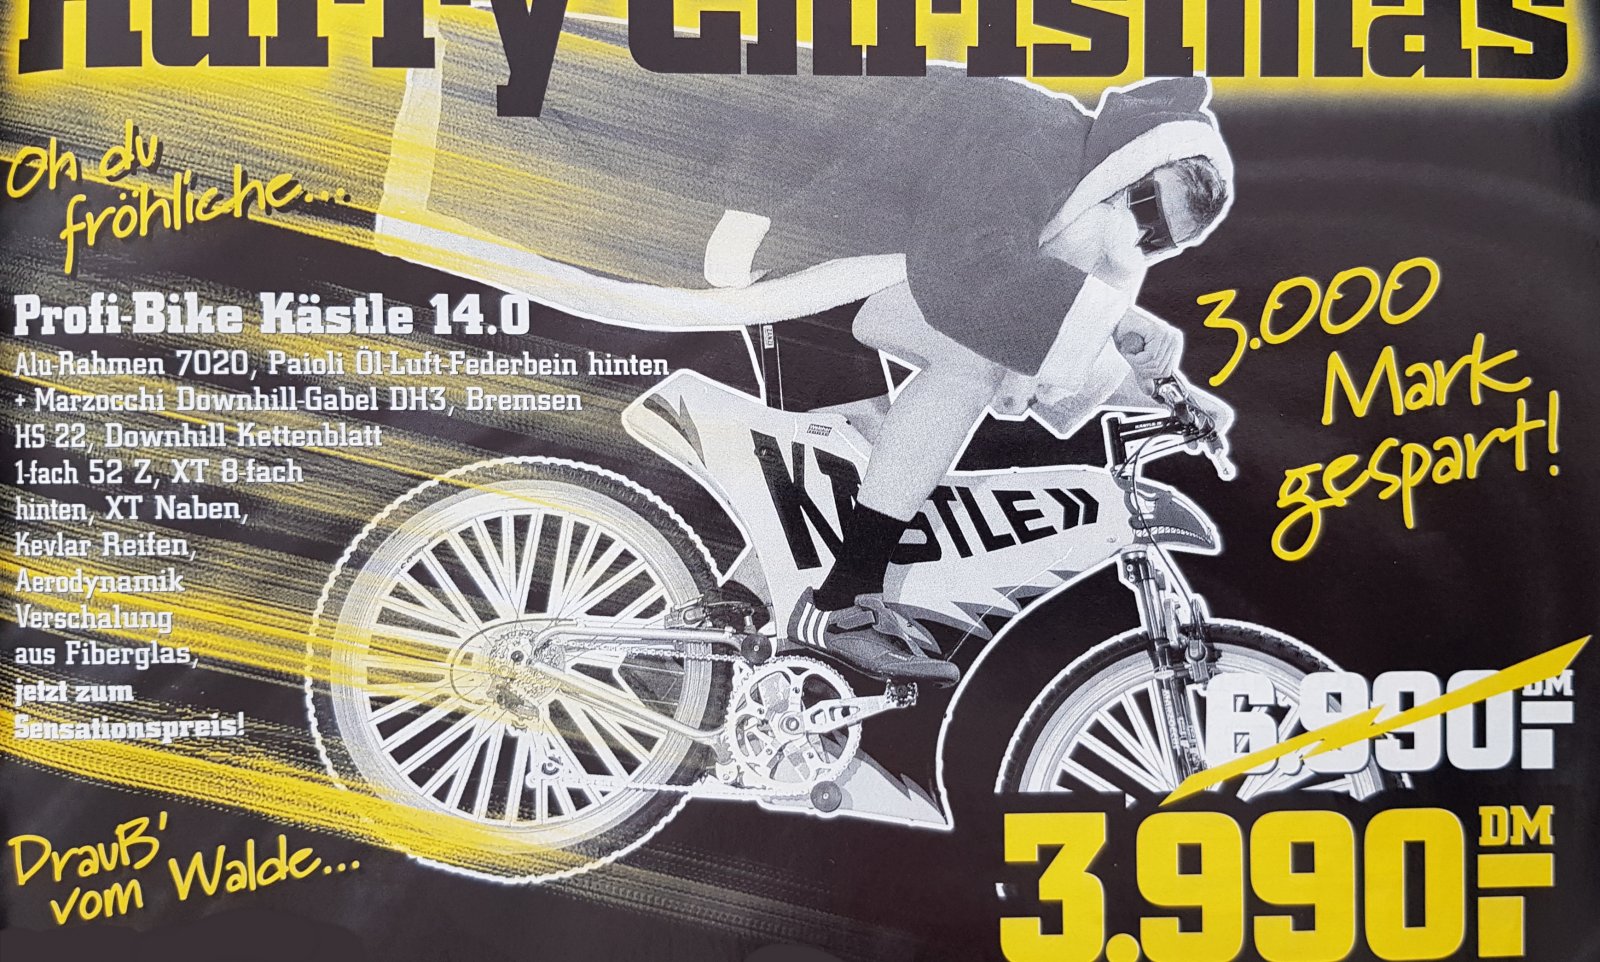 Kästle FS 14 Anzeige in Mountain Bike 1996_12.jpg